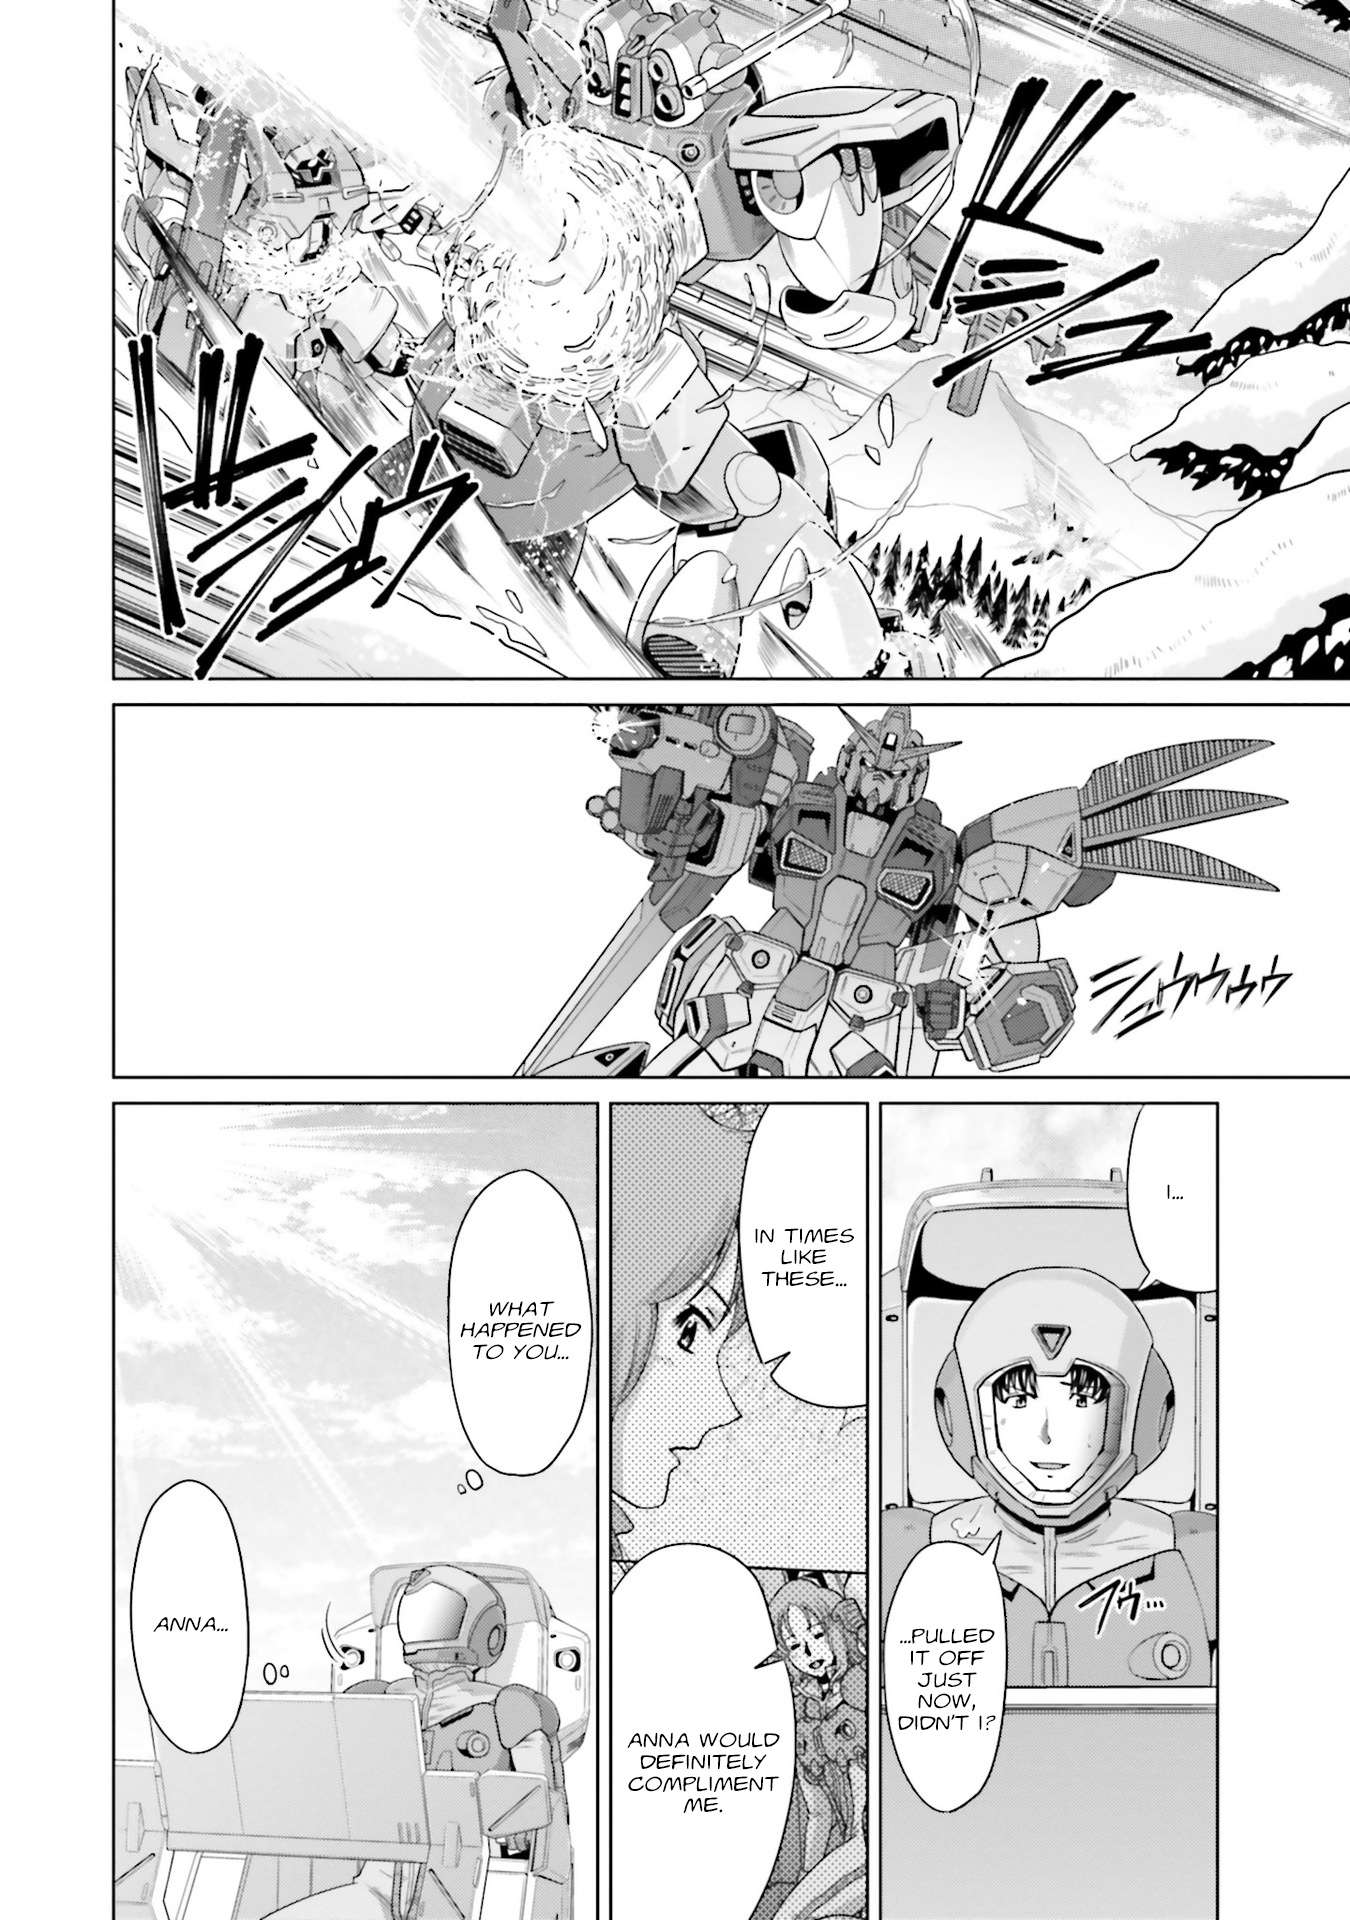 Kidou Senshi Gundam F90 FF - chapter 19.5 - #5